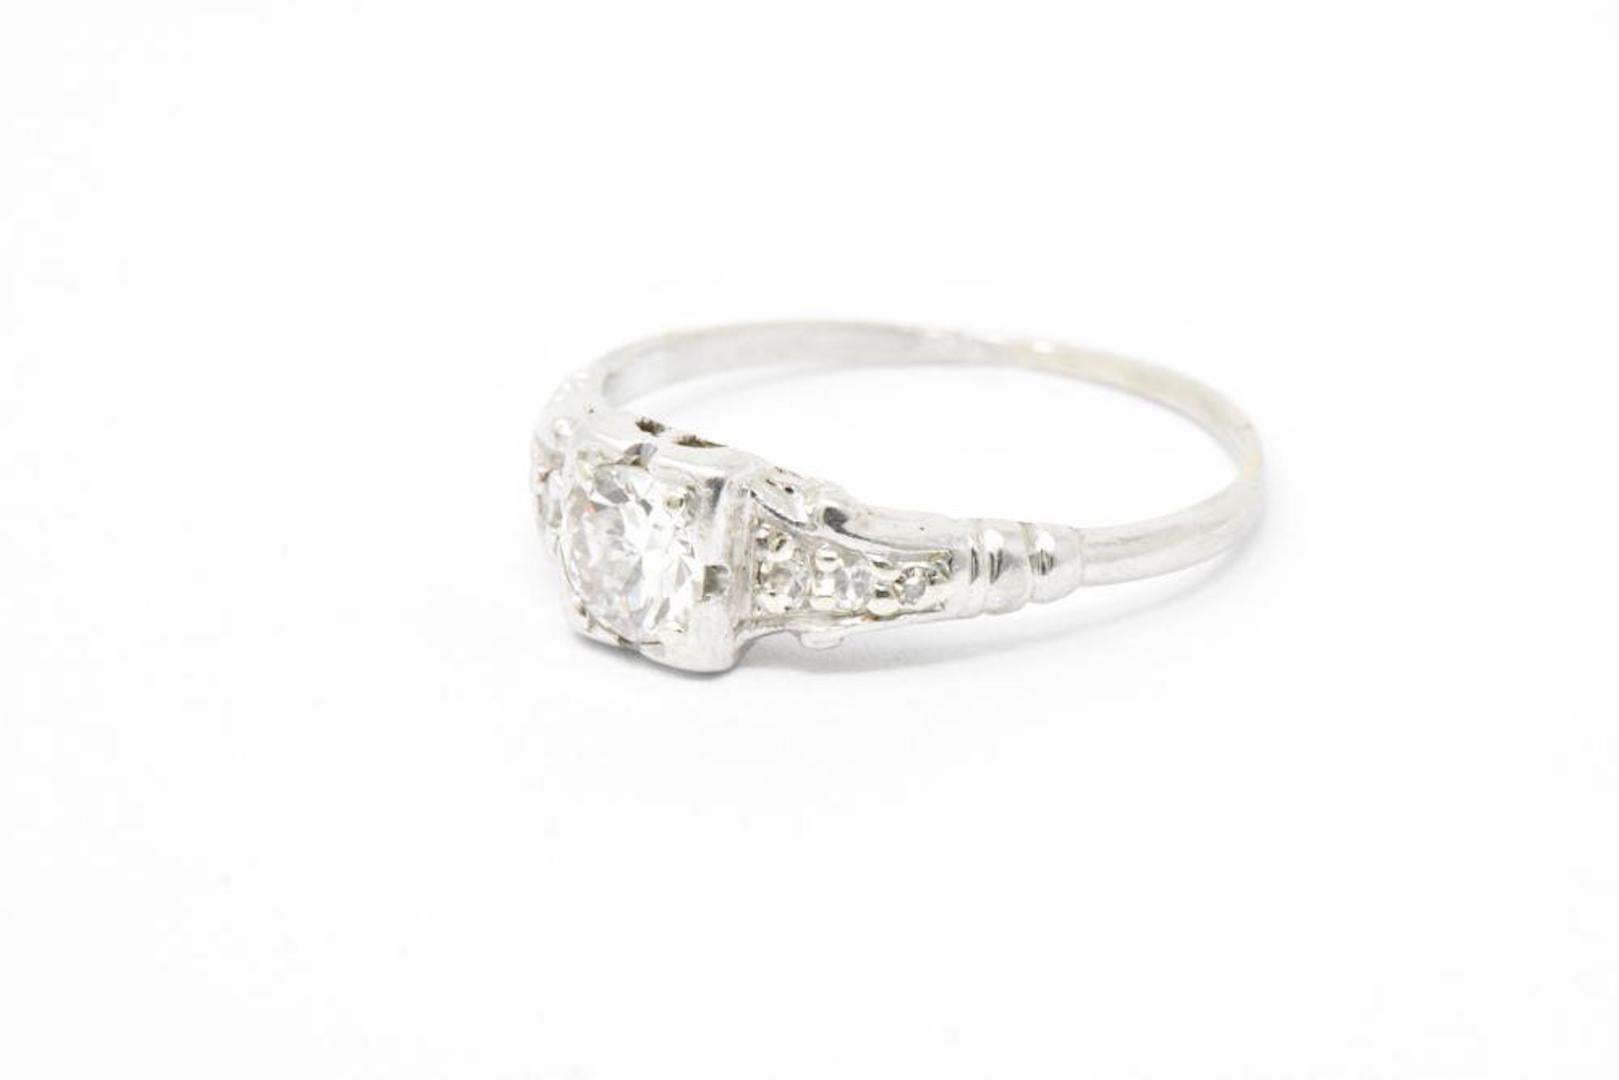 Old European Cut 0.46 Carat Diamond Platinum Art Deco 1930s Engagement Ring